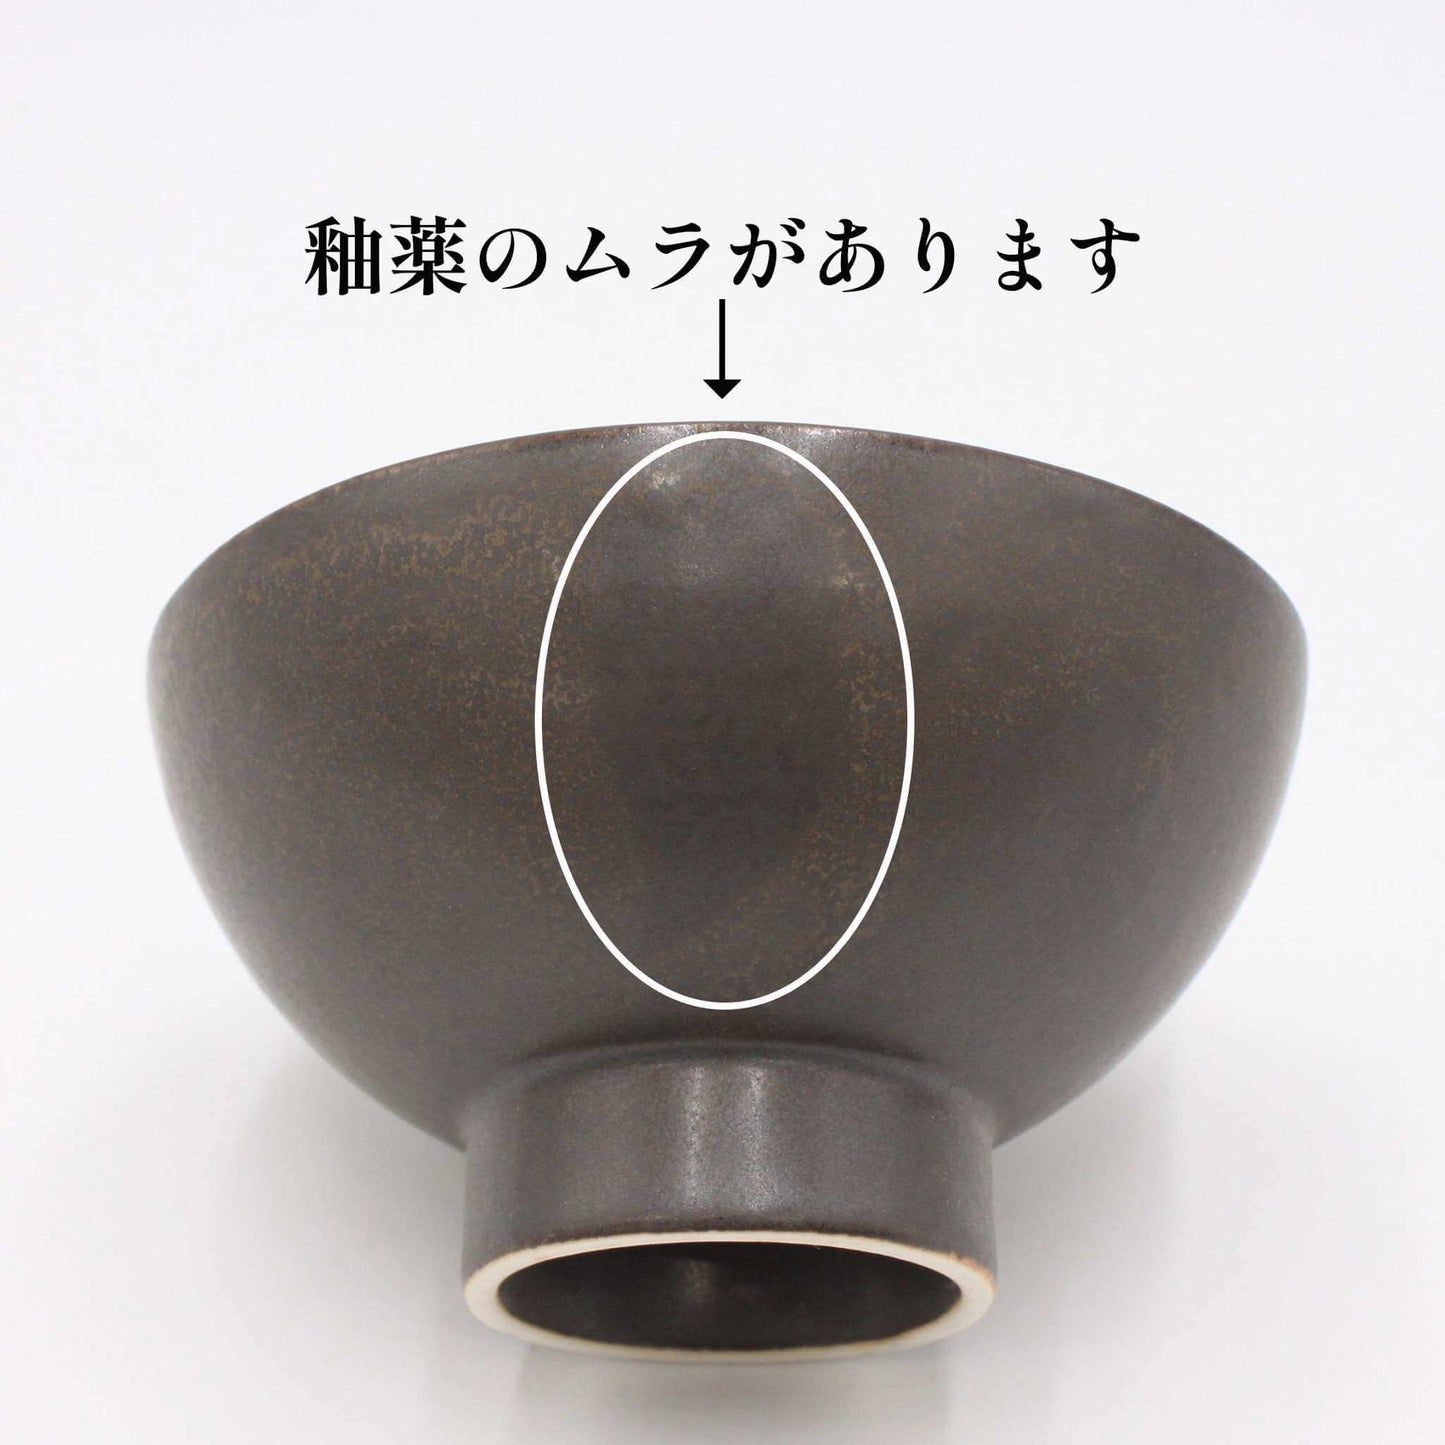 【OUTLET】翠 茶碗 炭 12cm